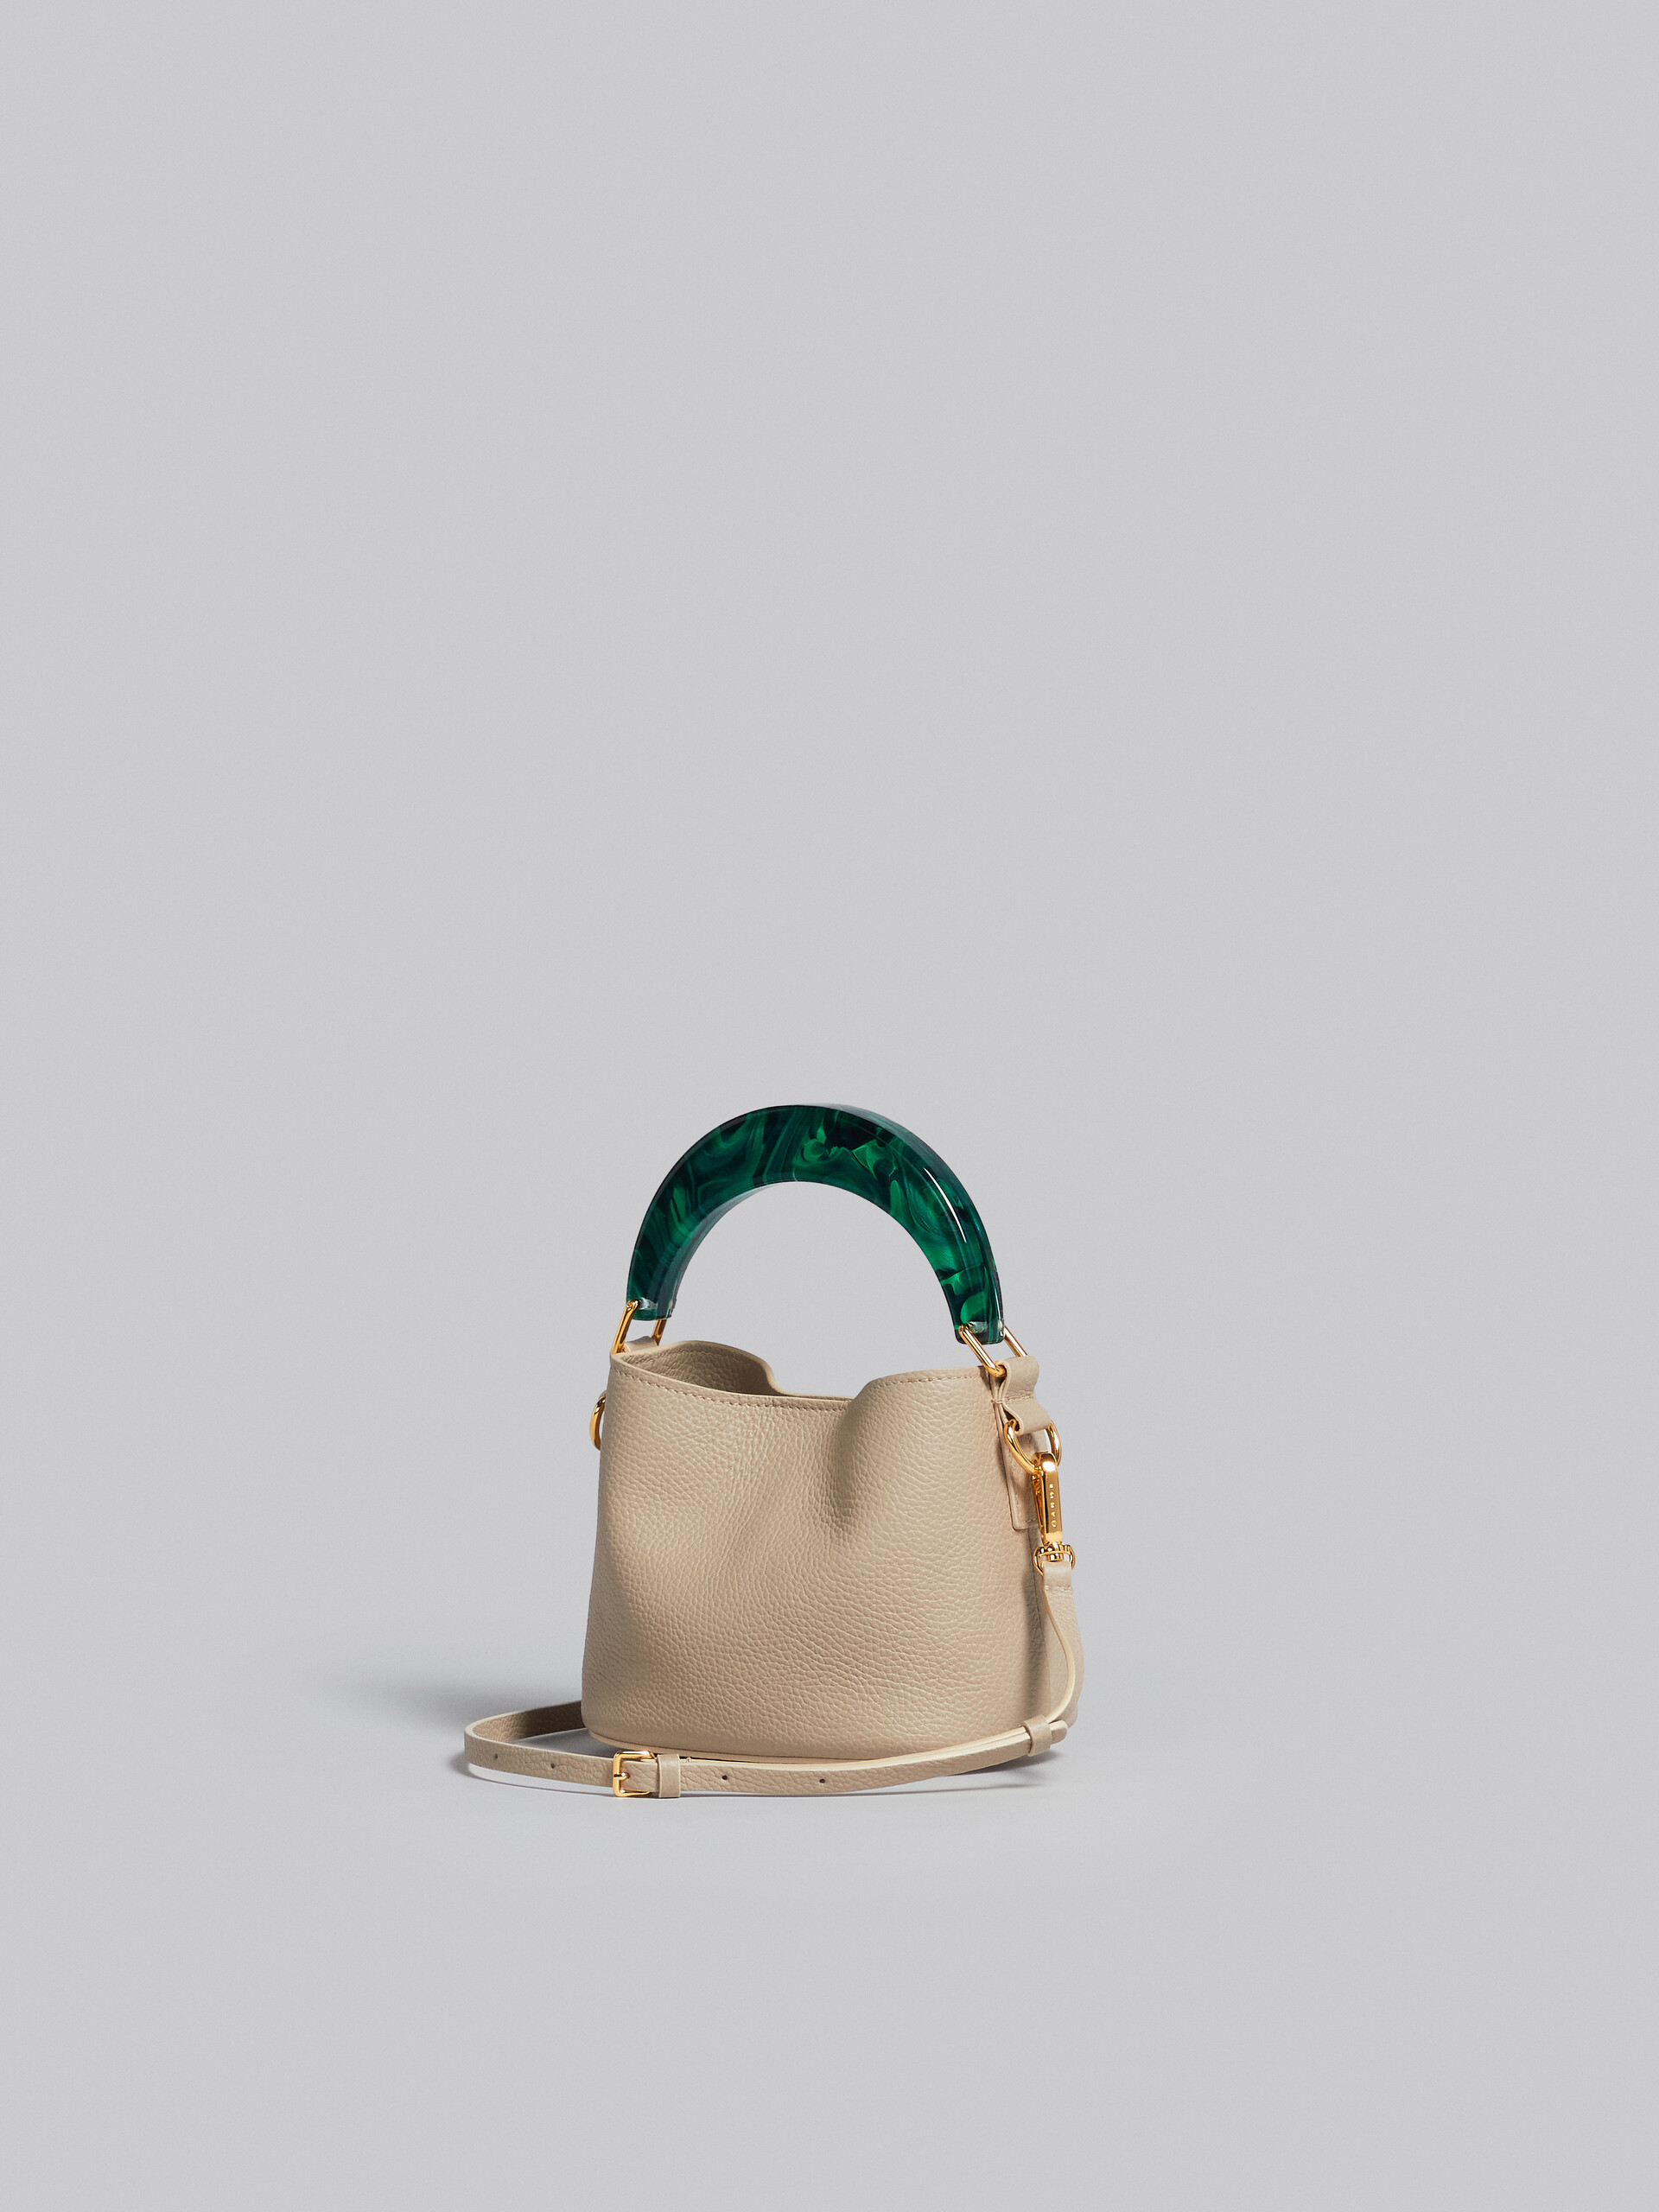 Venice Mini Bucket Bag in beige leather - Shoulder Bag - Image 2